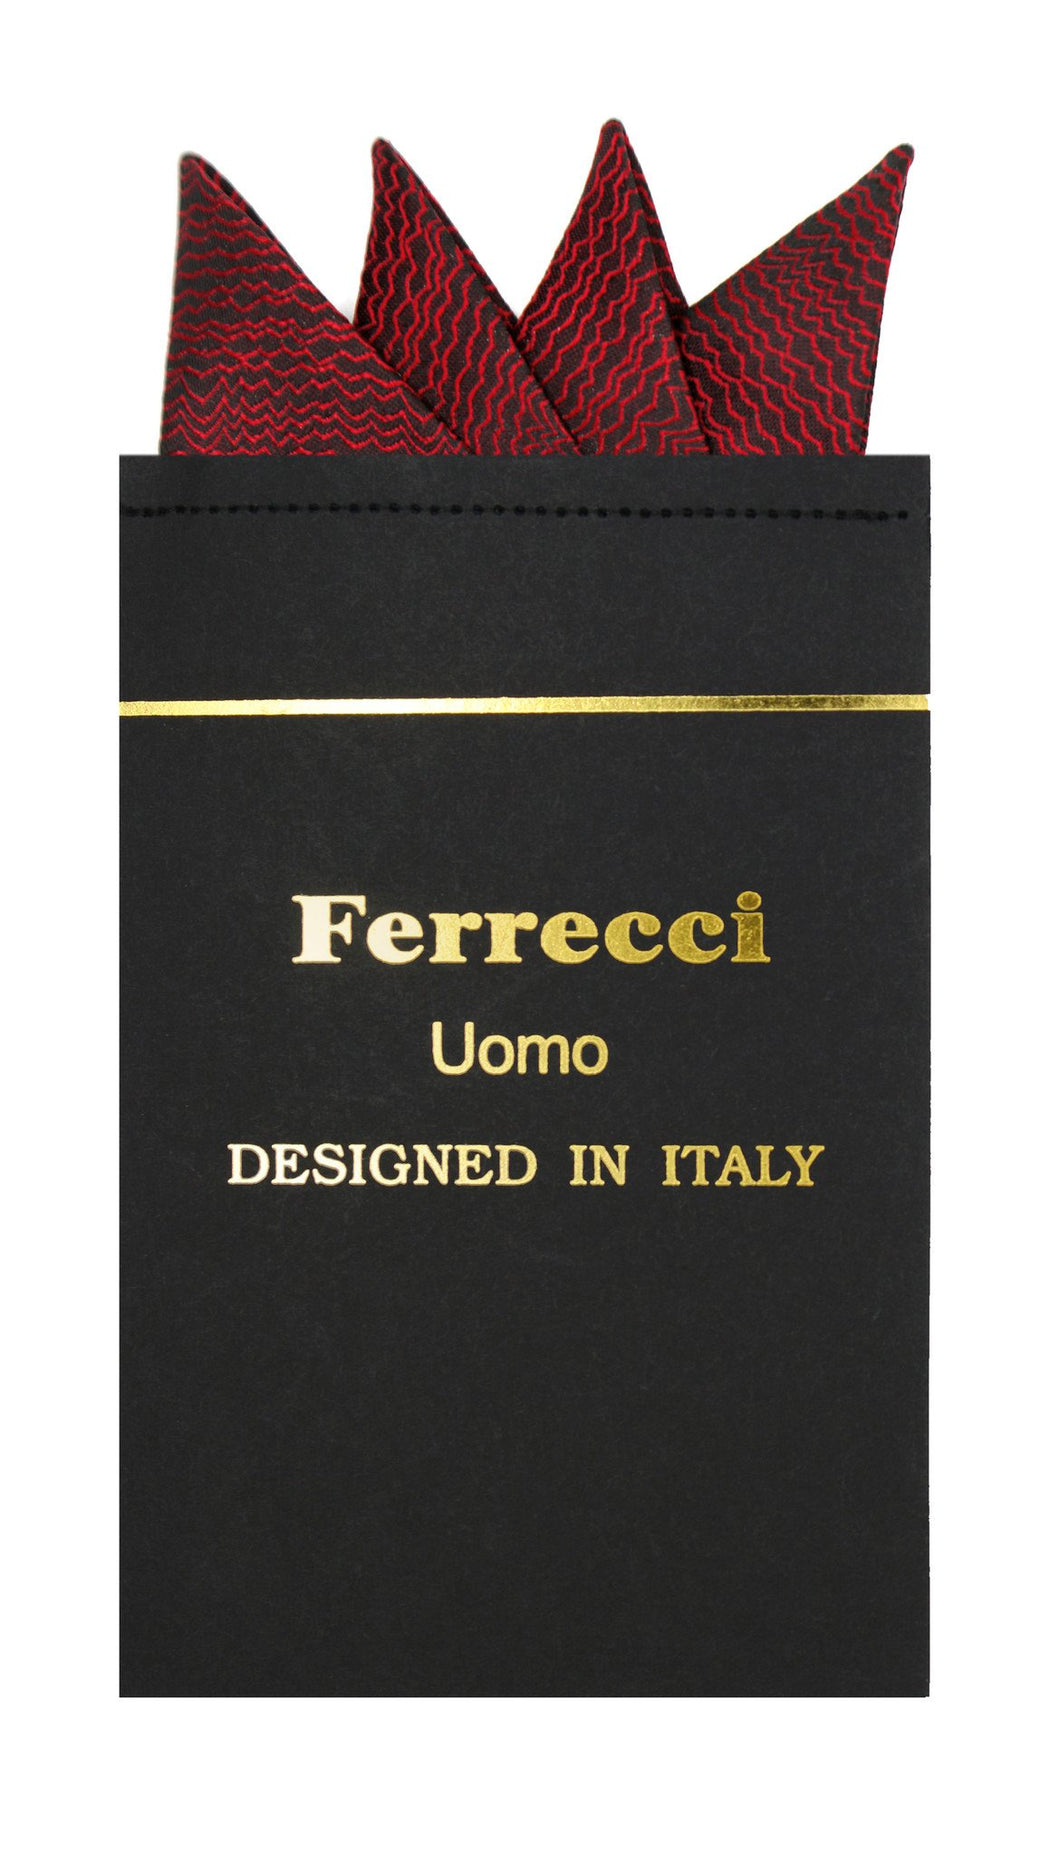 Pre-Folded Microfiber Red Black Stripe Handkerchief Pocket Square - Ferrecci USA 